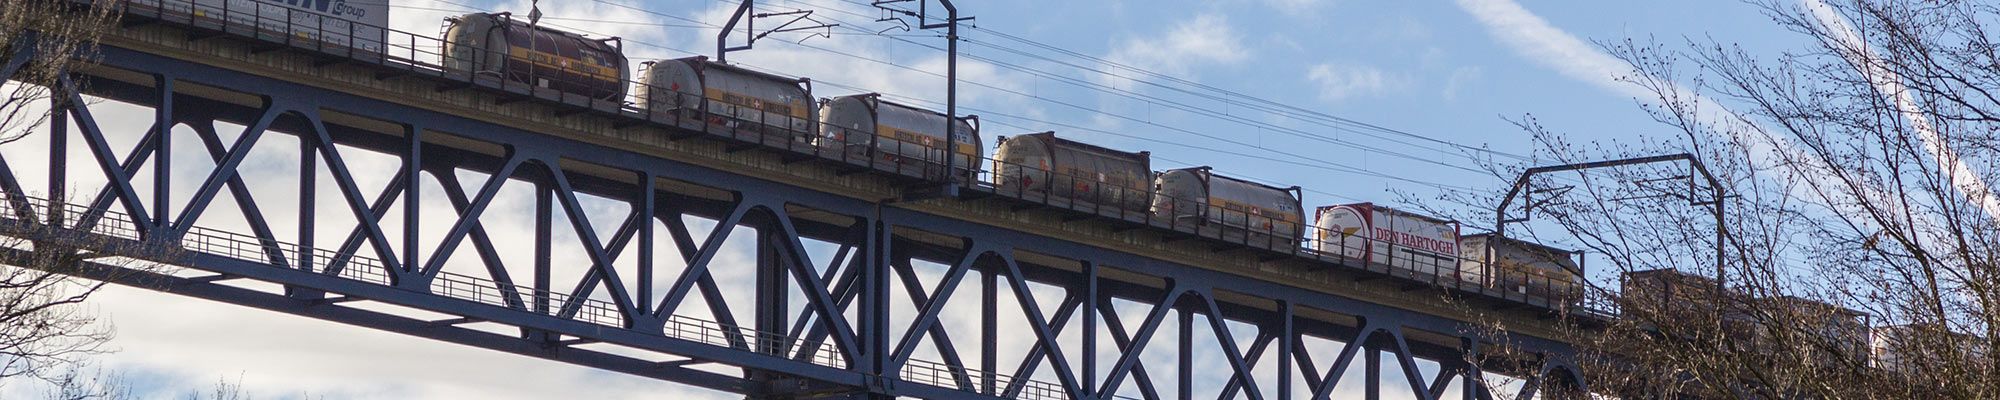 Surveillance ferroviaire Systèmes robustes, autonomes pour l'acquisition de données dans l'industrie ferroviaire